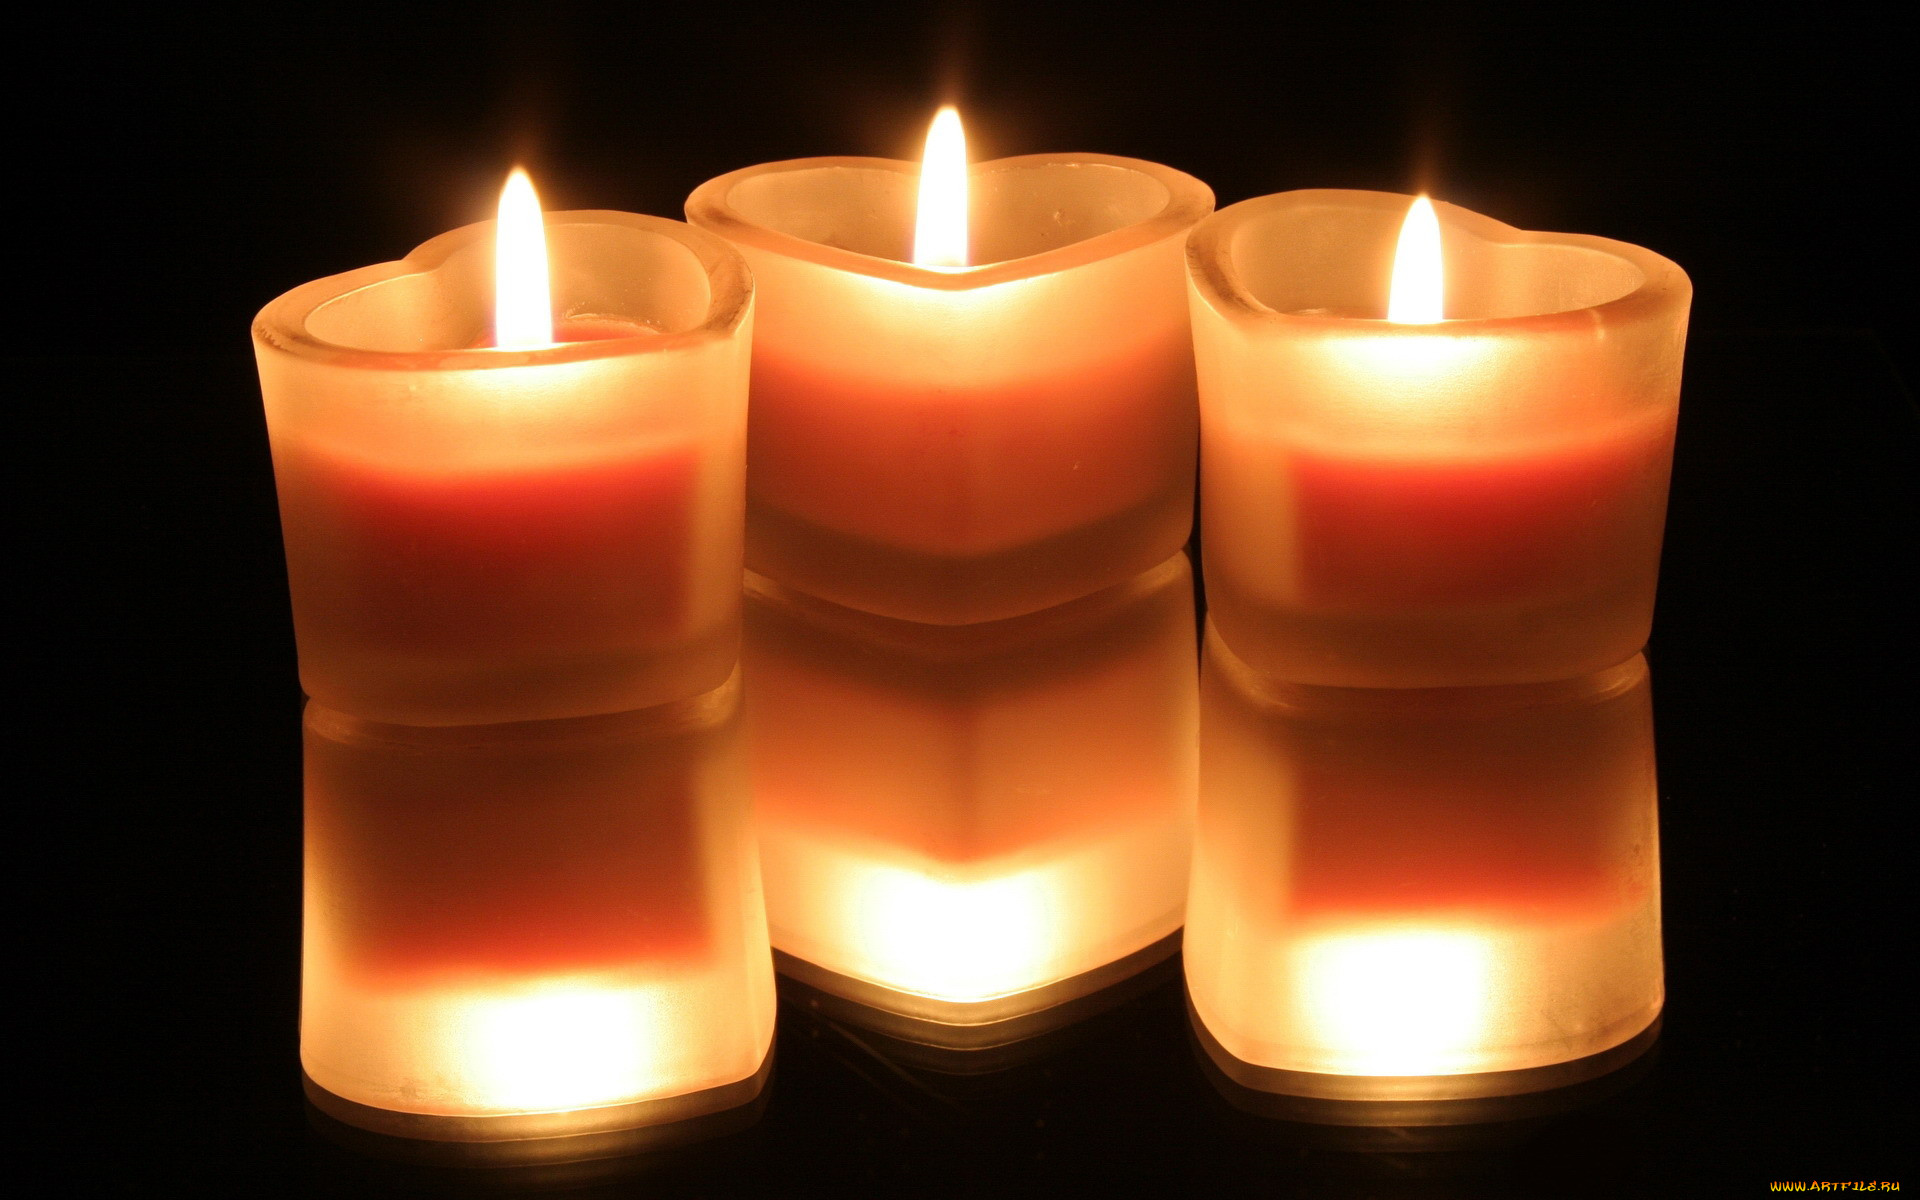 Зажгем свечи. Красивые свечи. Зажженная свеча. Горящие свечи. Три горящие свечи.